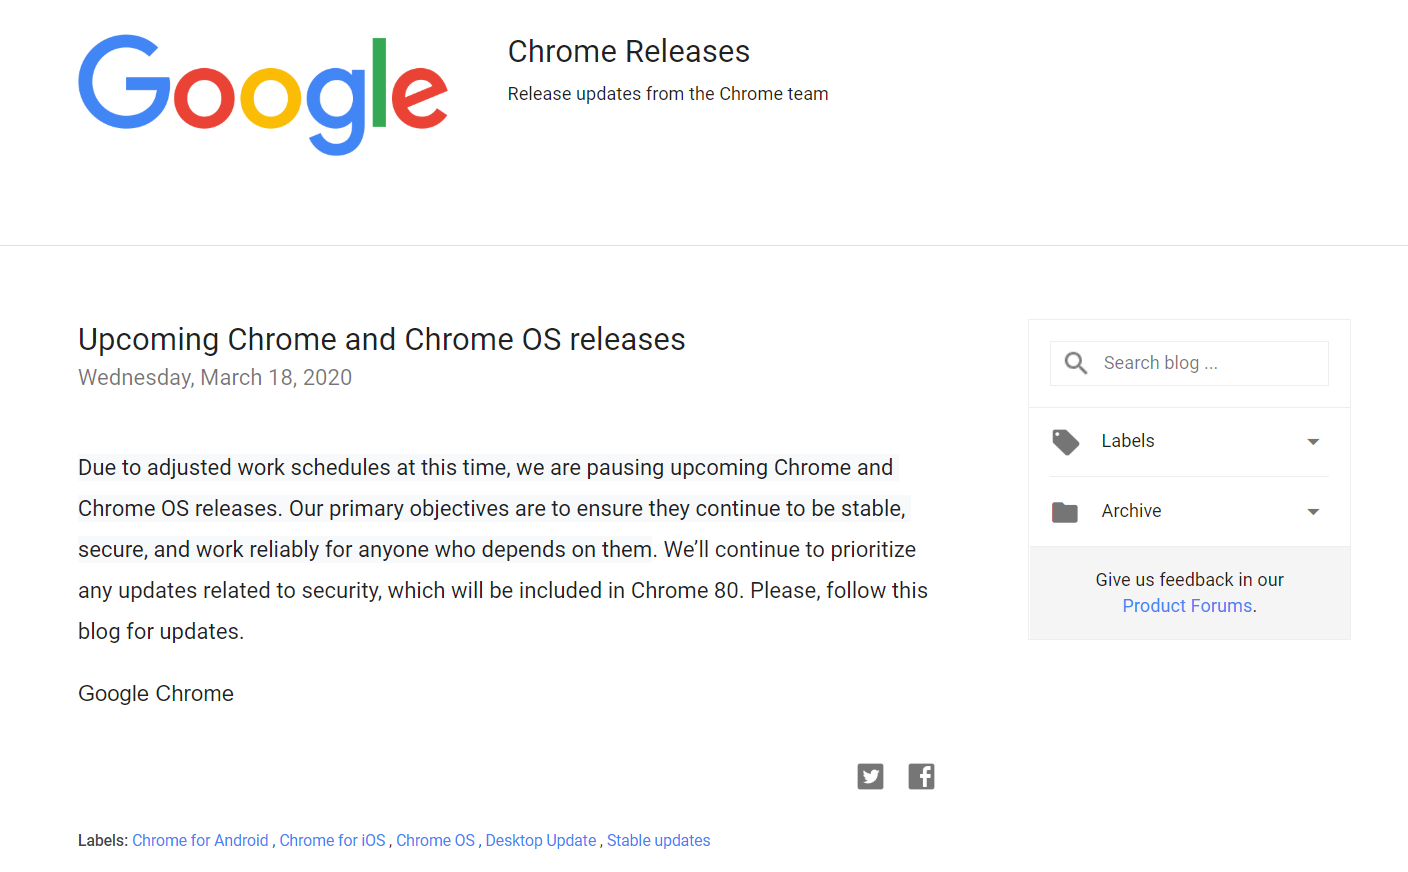 疫情影响，谷歌宣布暂停更新Chrome和Chrome OS